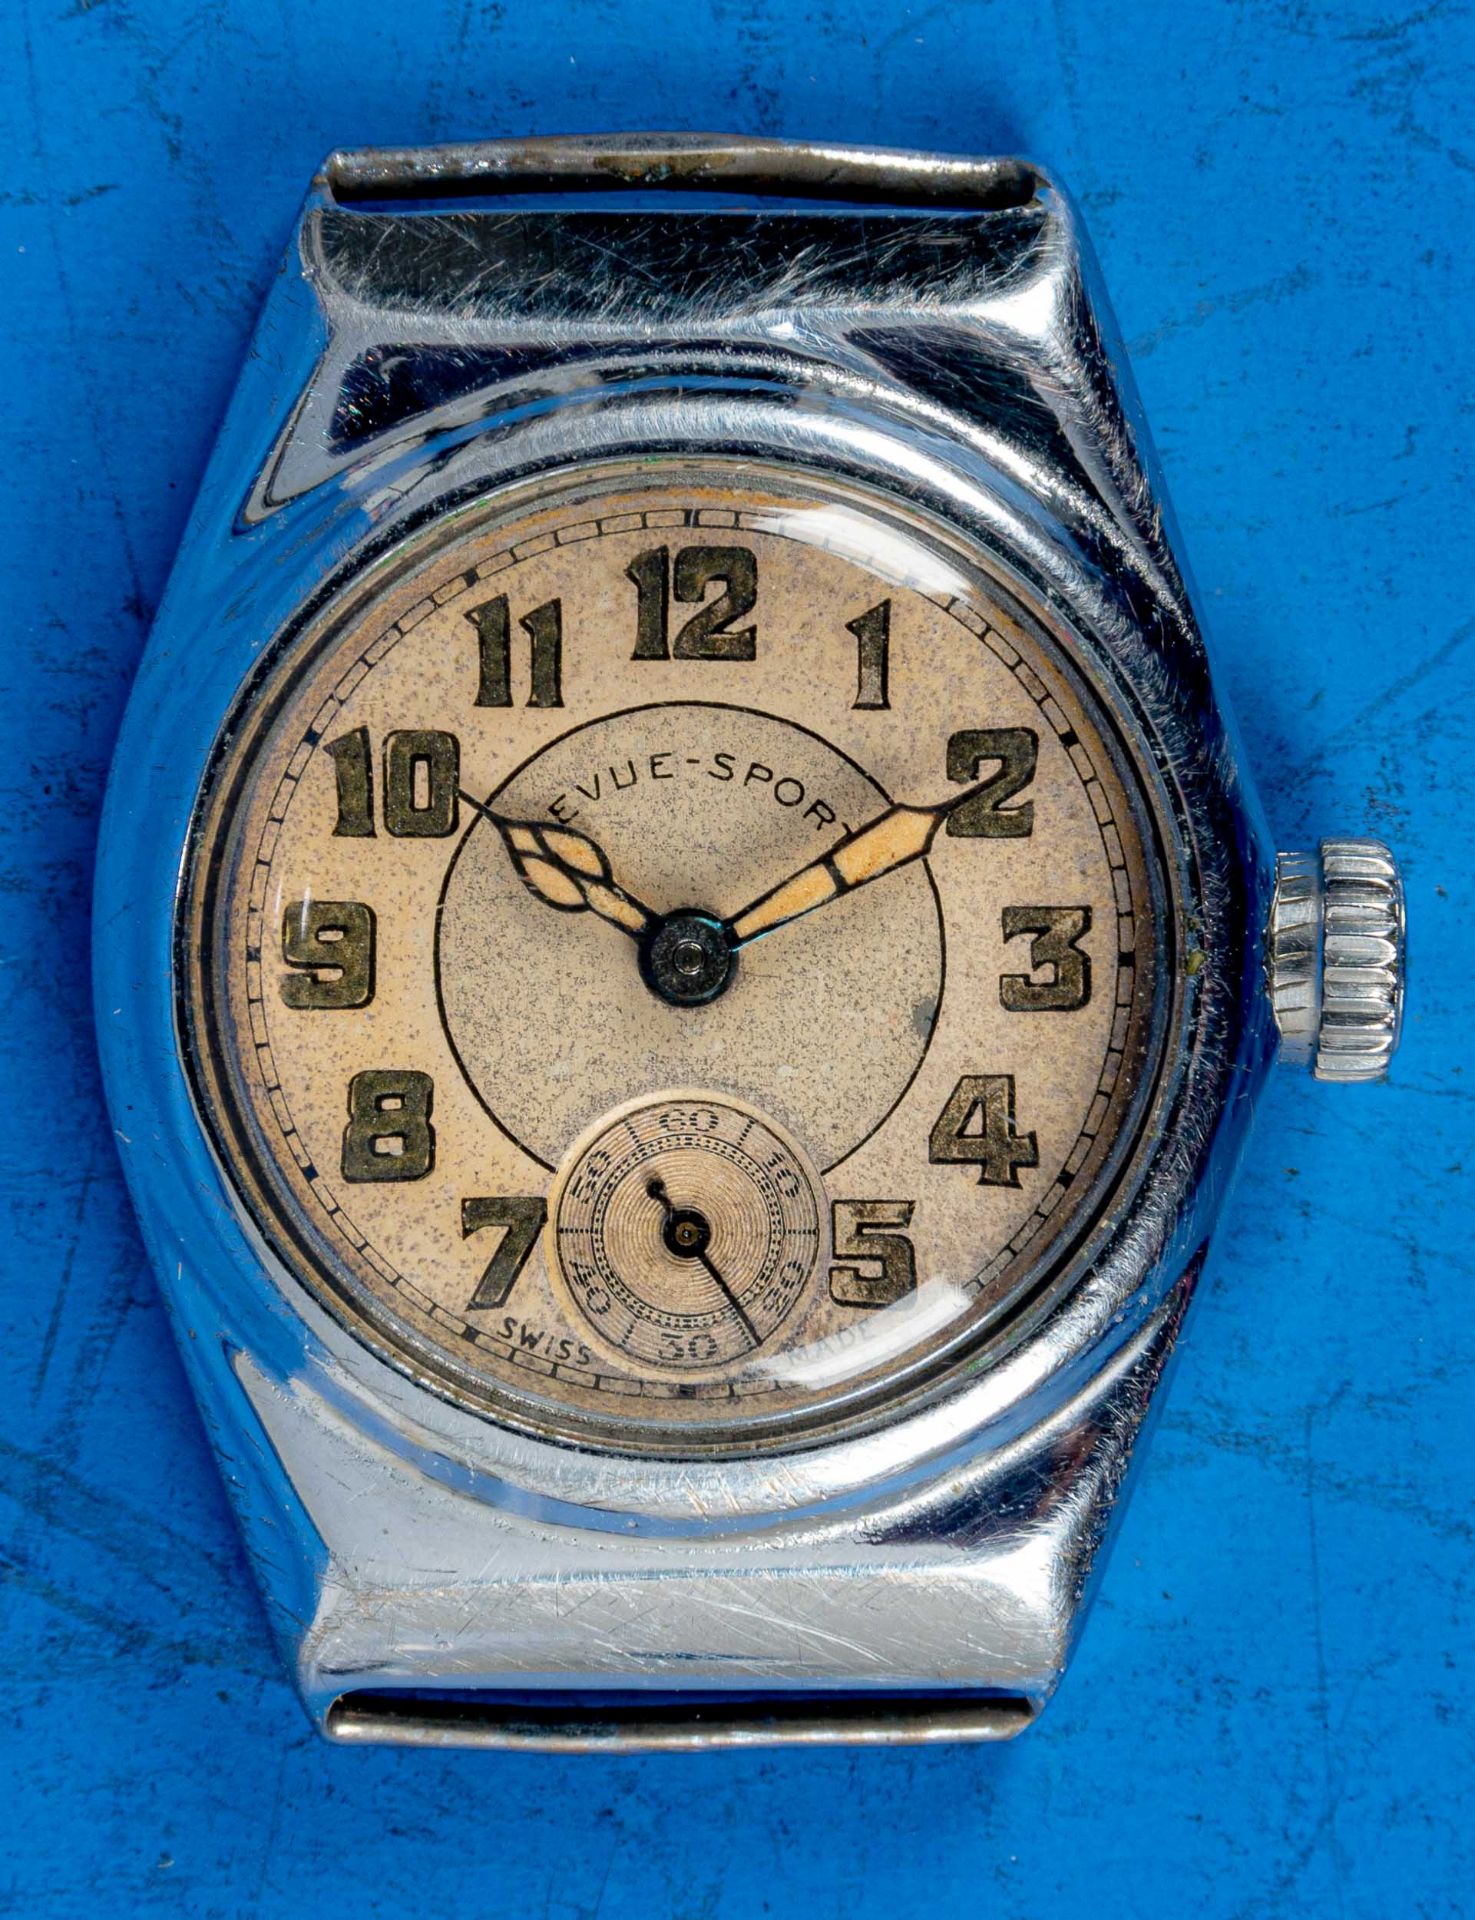 "REVUE SPORT" Unisex Armbanduhr, Stahlgehäuse, wohl 1930er Jahre, Gehäusedurchmesser ca. 28 mm, ara - Bild 2 aus 5